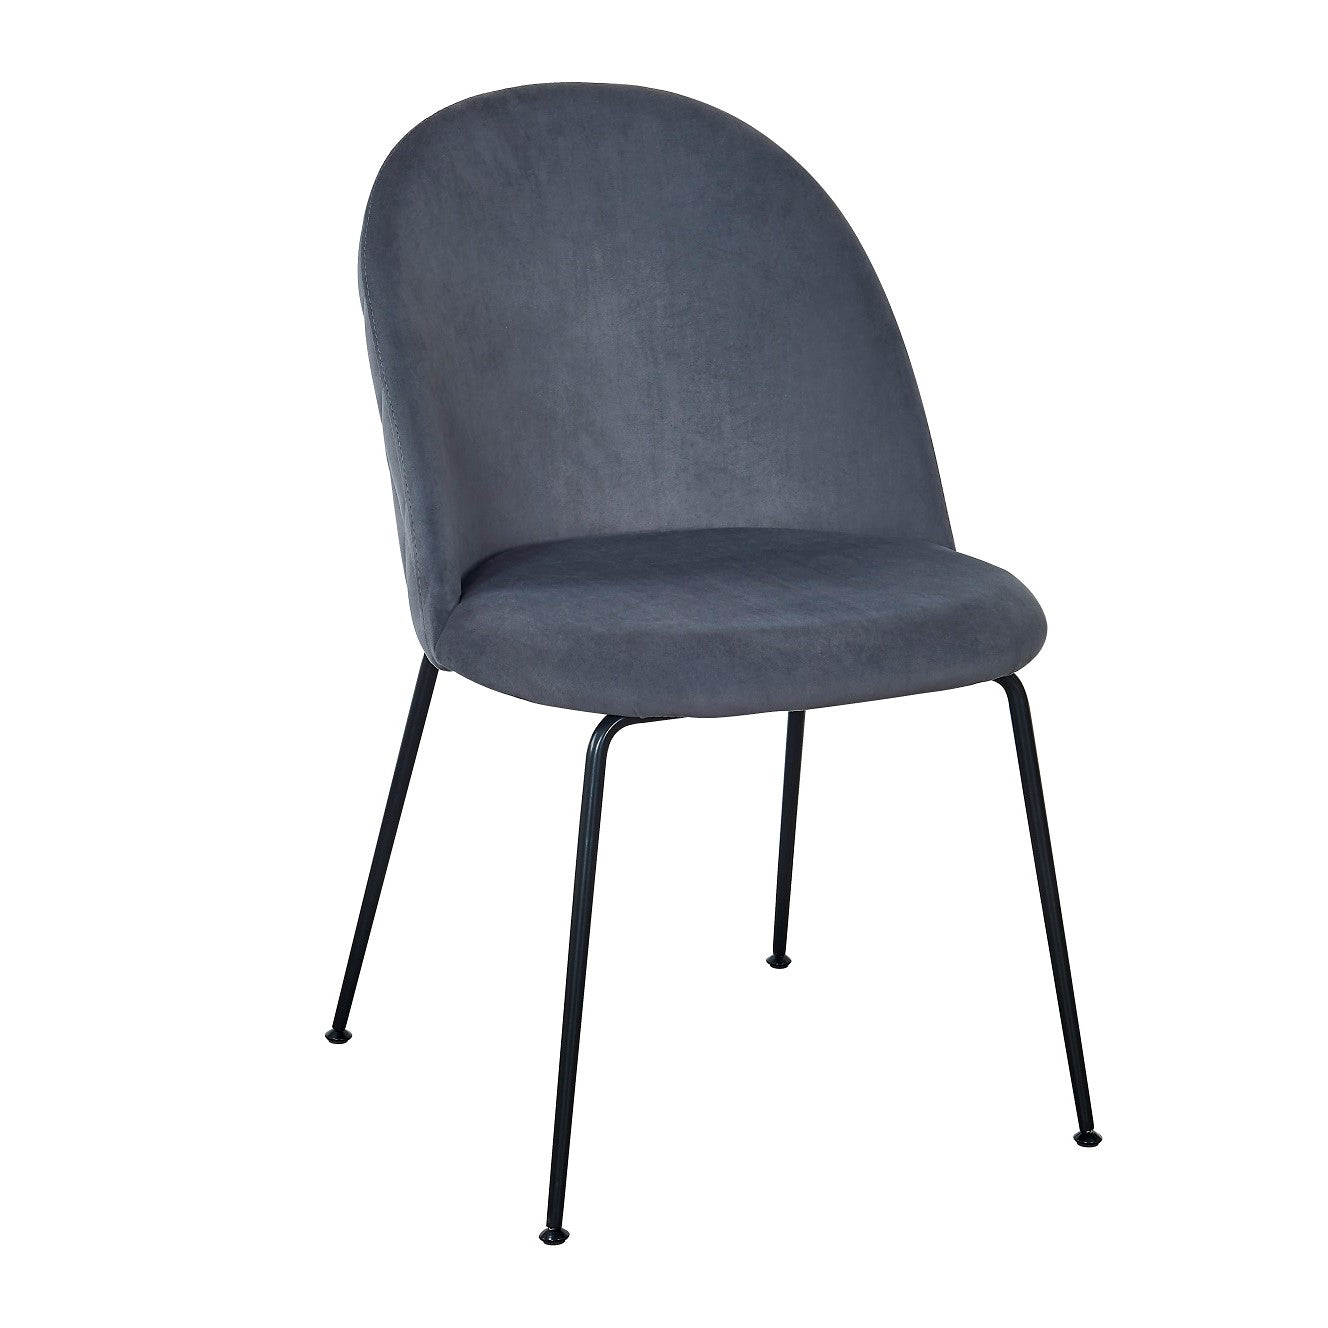 Silla de comedor tercipelo gris  Veza negro- Comprar silla de comedor terciopelo
